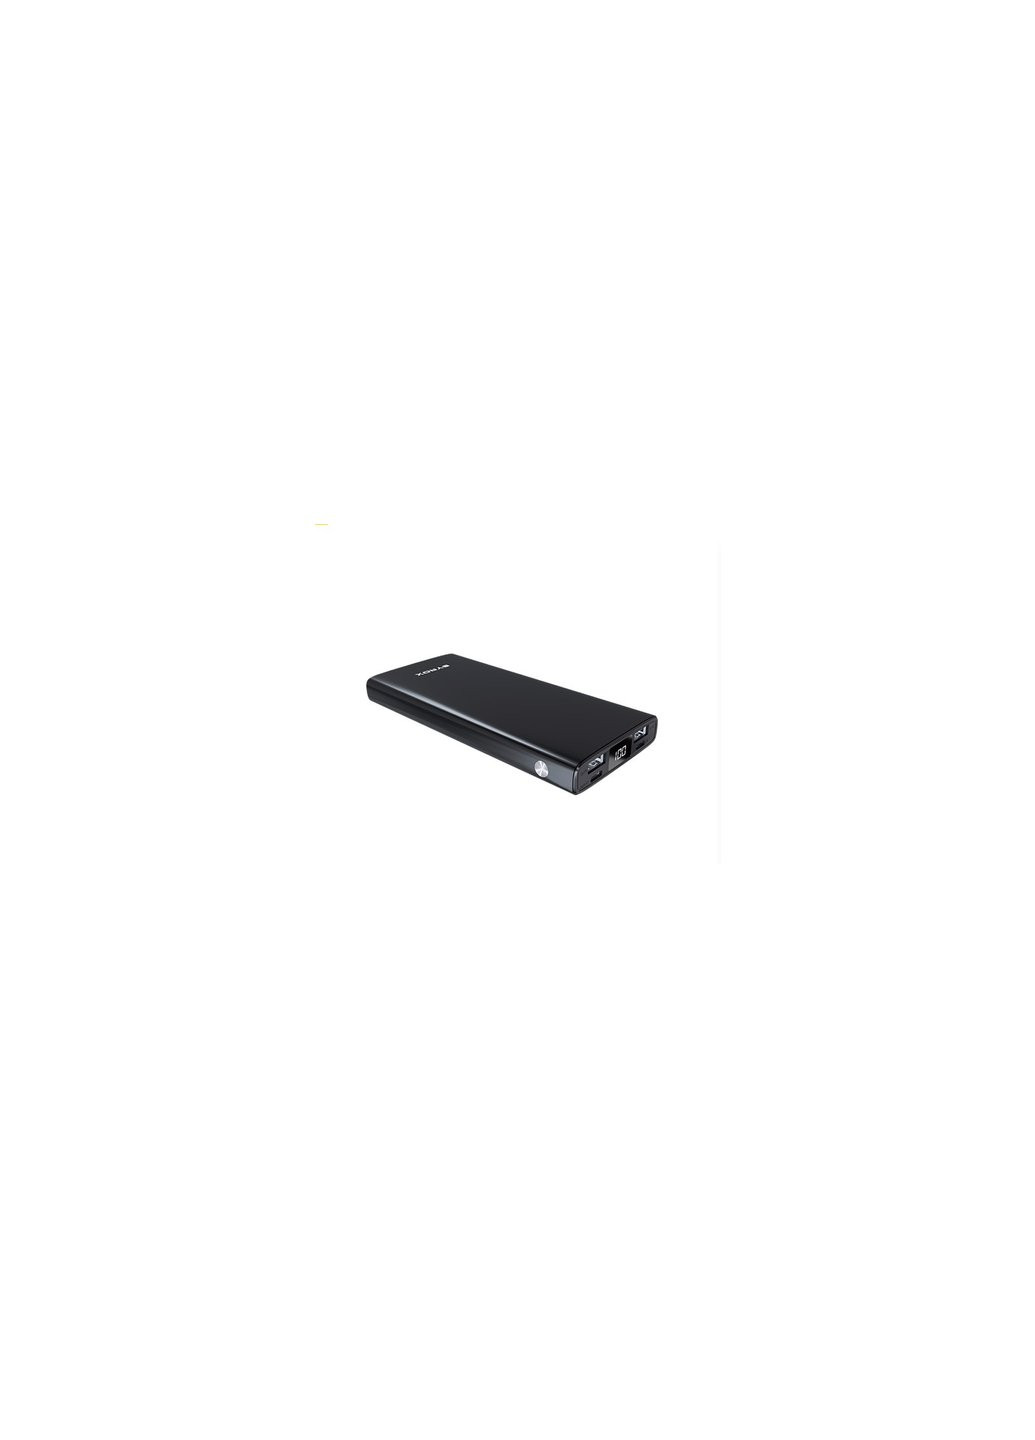 Батарея універсальна PB117 10000mAh, USB*2, Micro USB, Type C, black (PB117_black) Syrox (257257236)